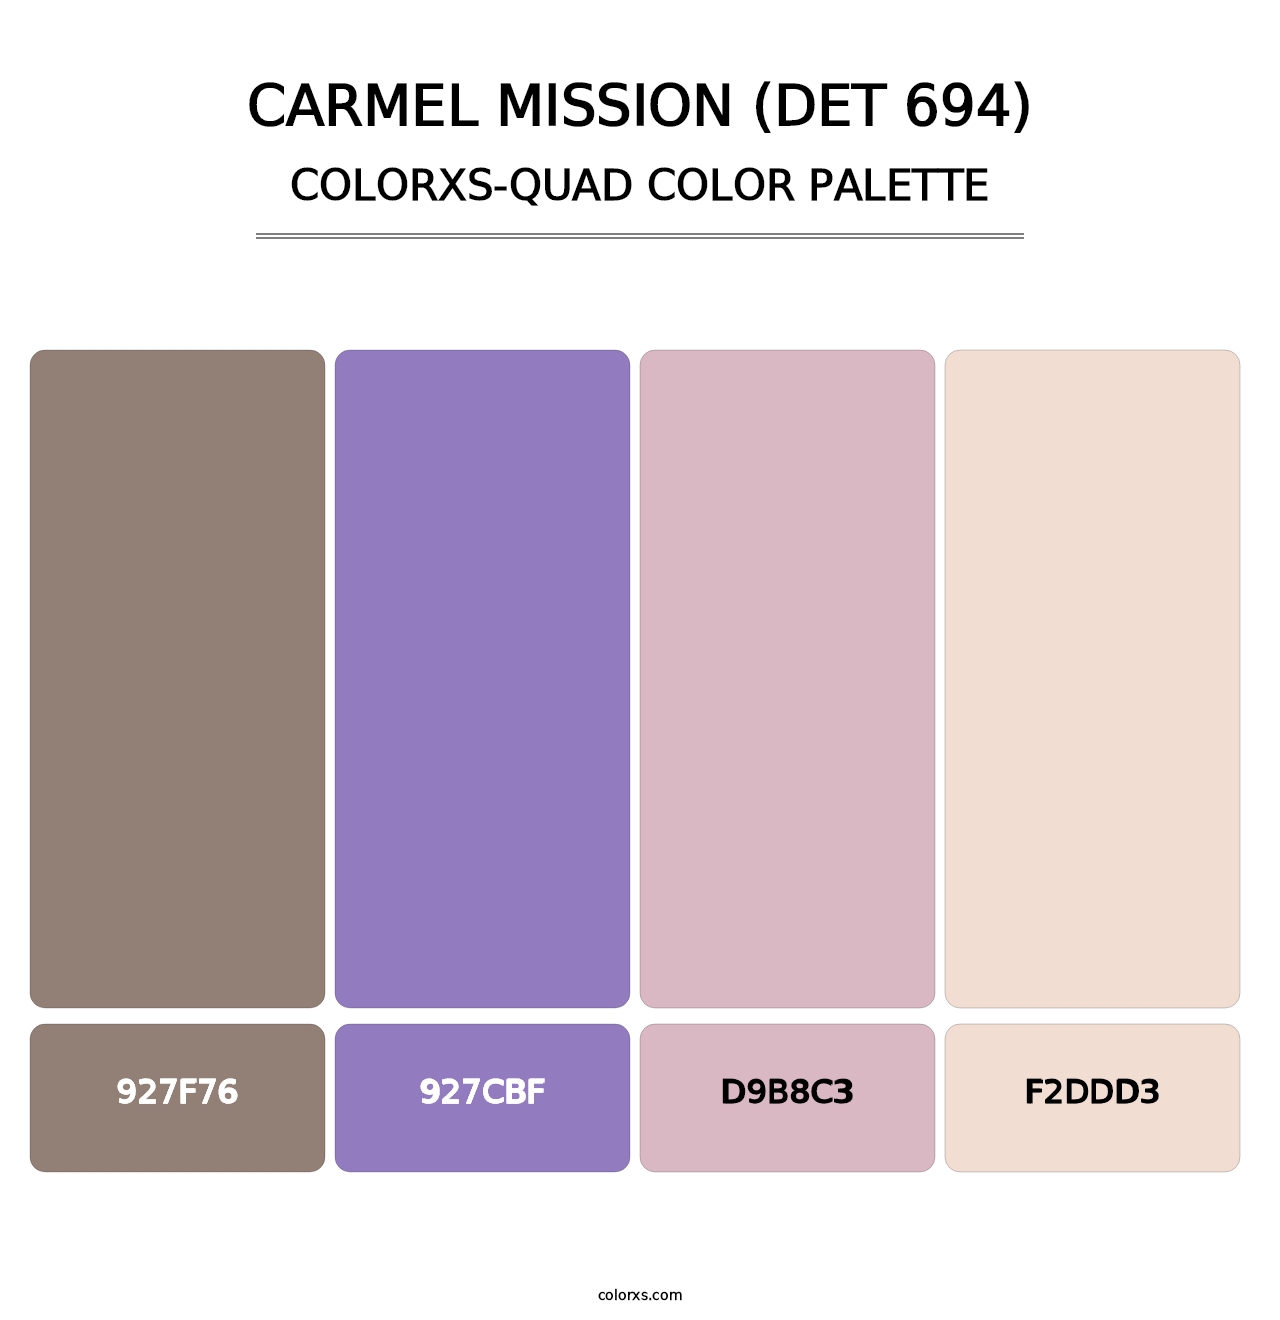 Carmel Mission (DET 694) - Colorxs Quad Palette